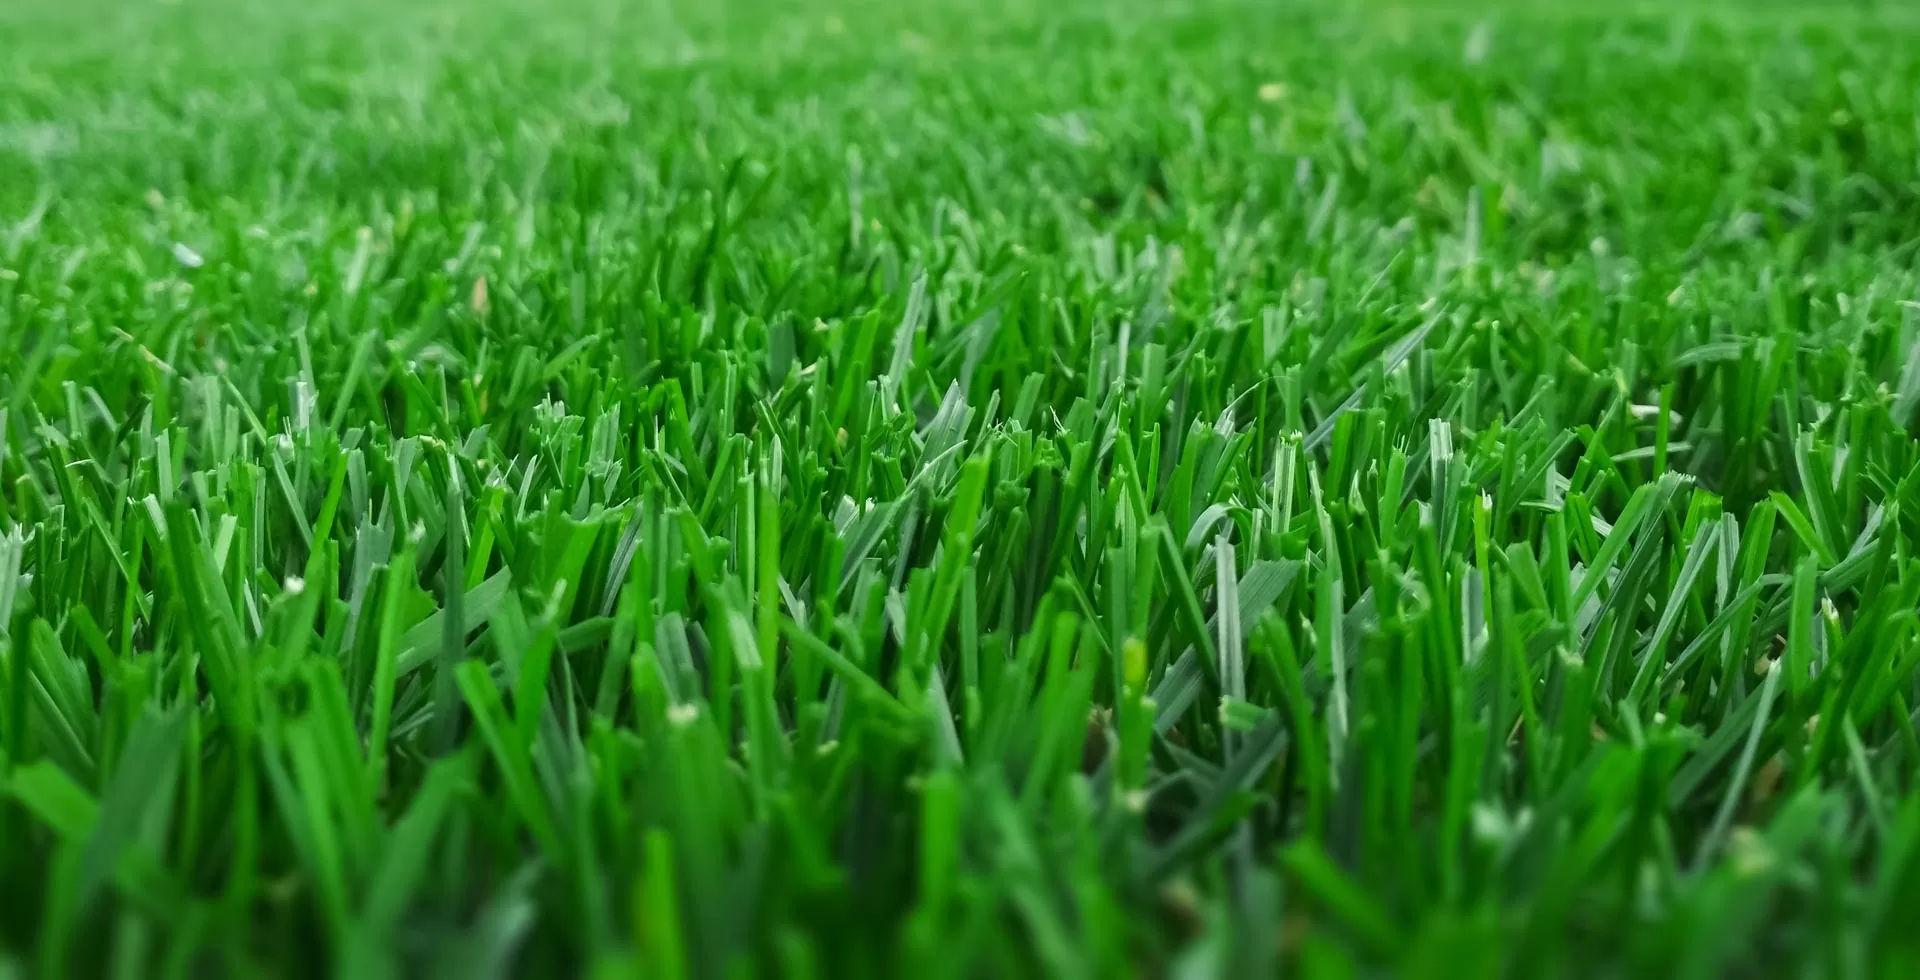 grassy area